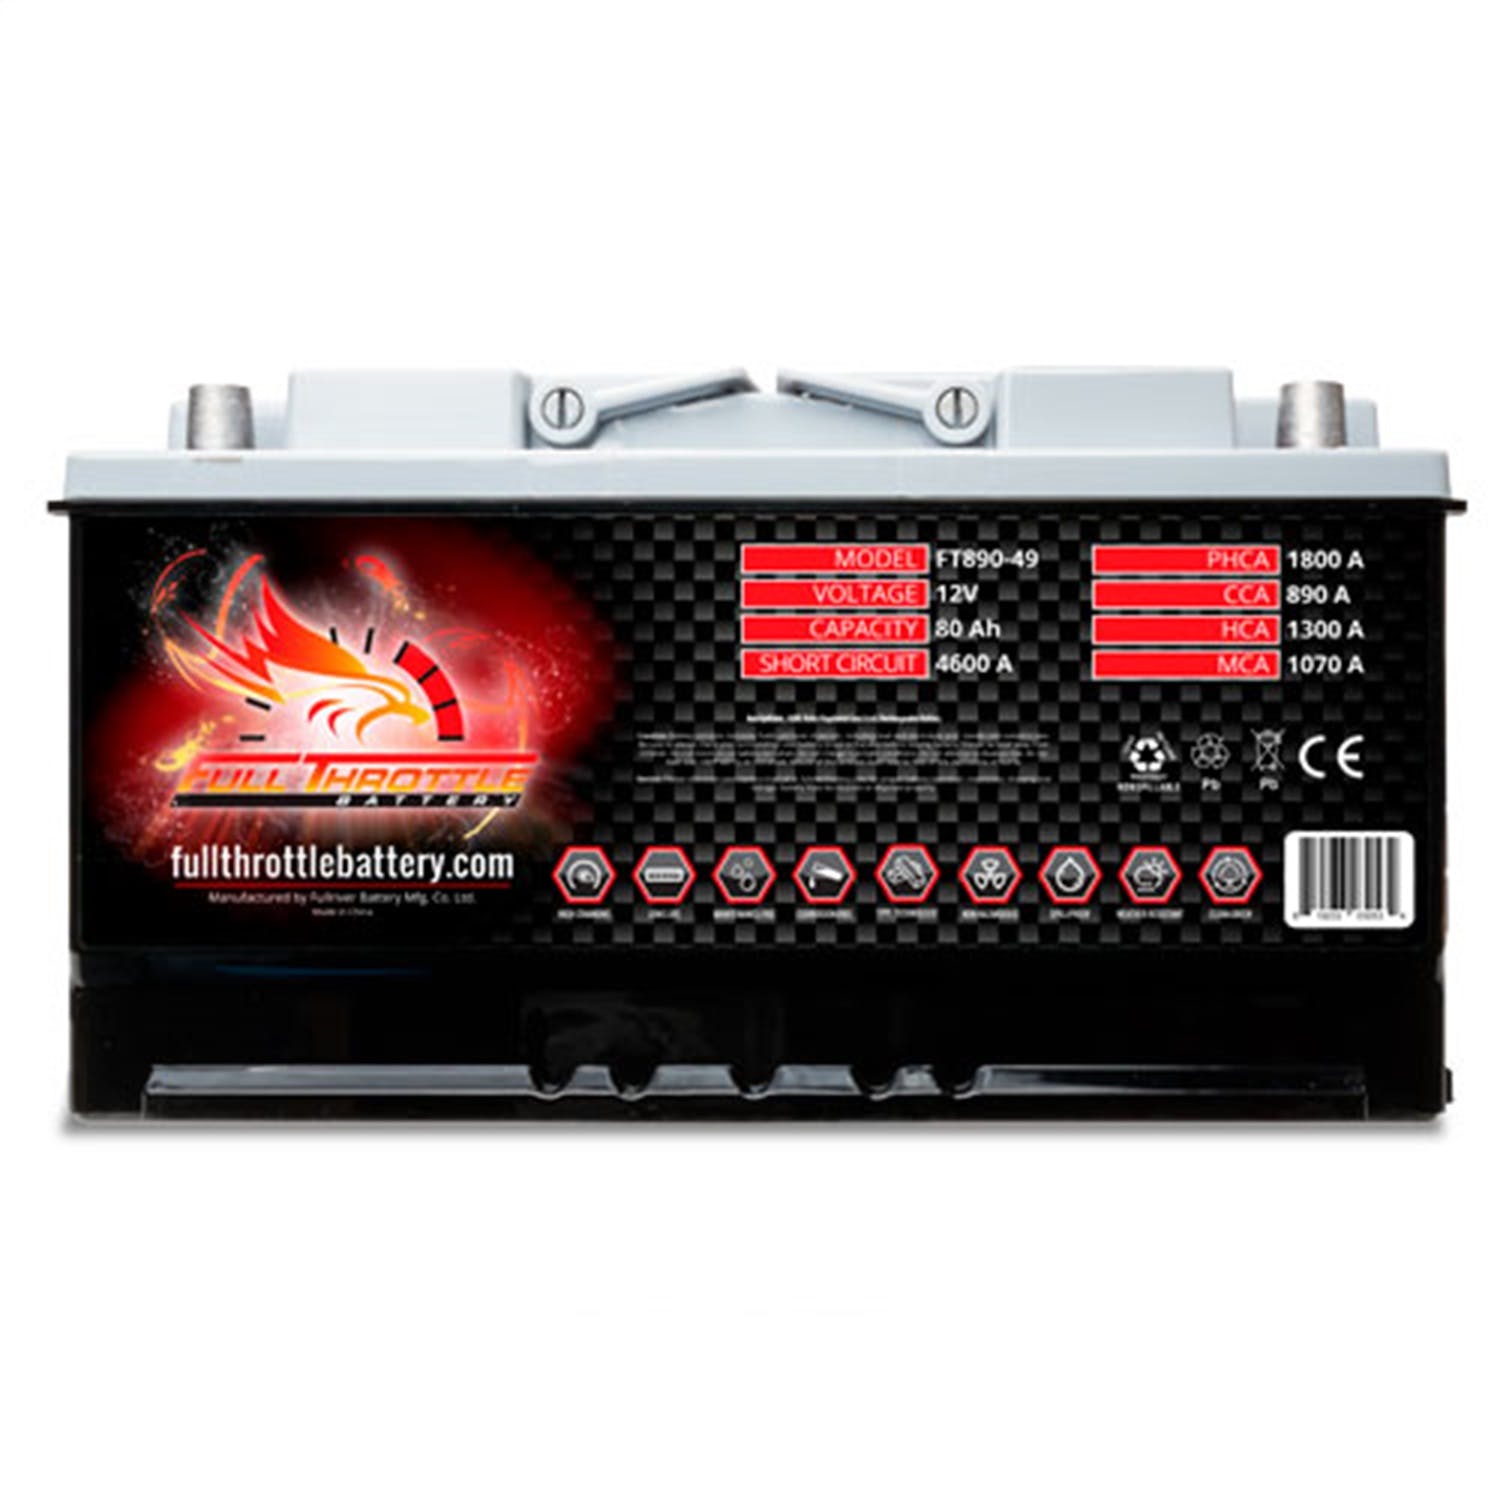 Fullriver Battery FT890-49 Full Throttle 12V Automotive Battery